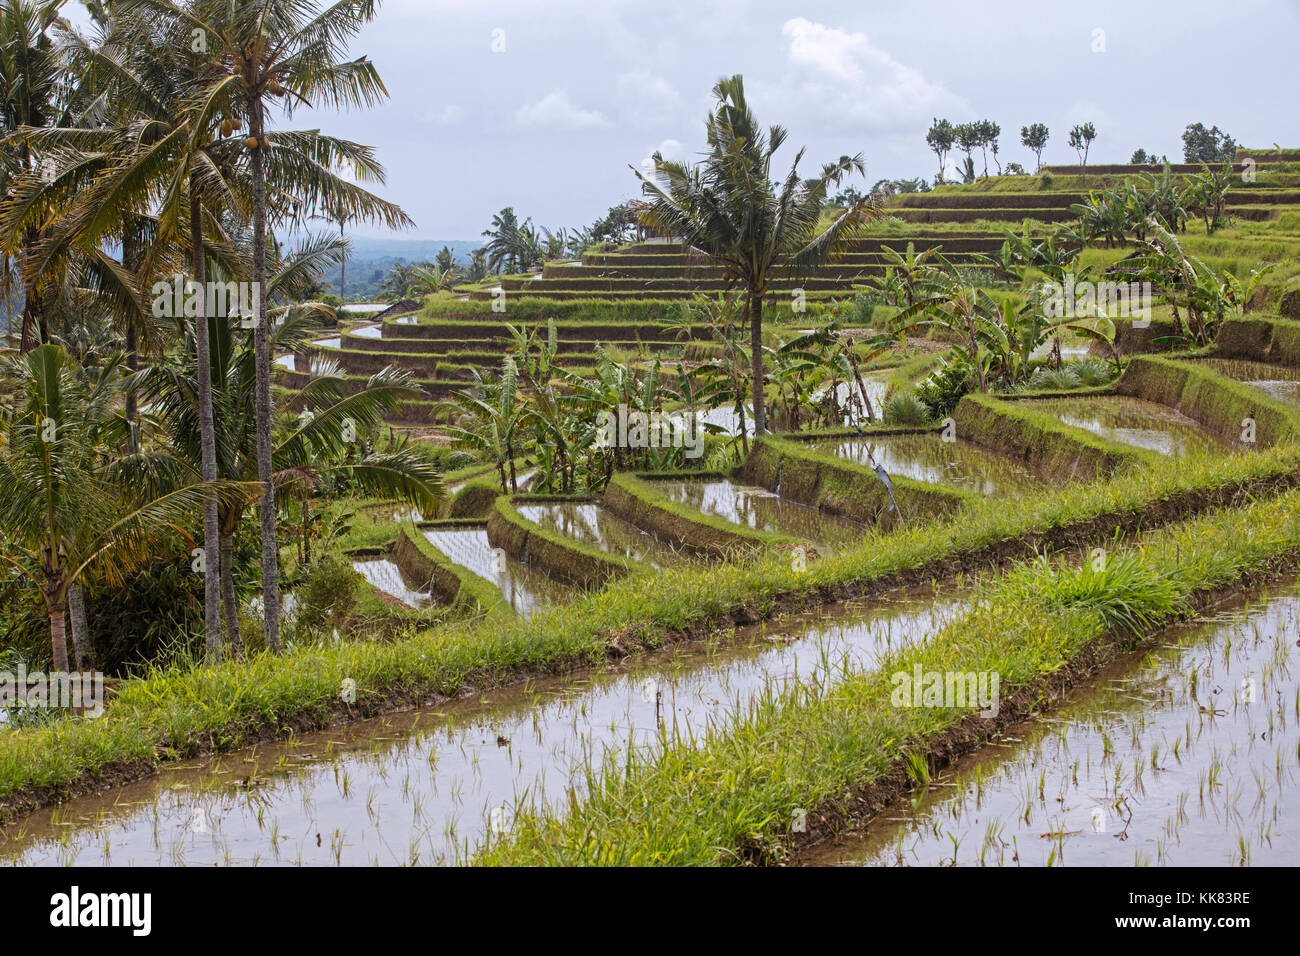 Les rizières en terrasses de jatiluwih, rizières en terrasses dans les montagnes de l'ouest de Bali, Indonésie Banque D'Images